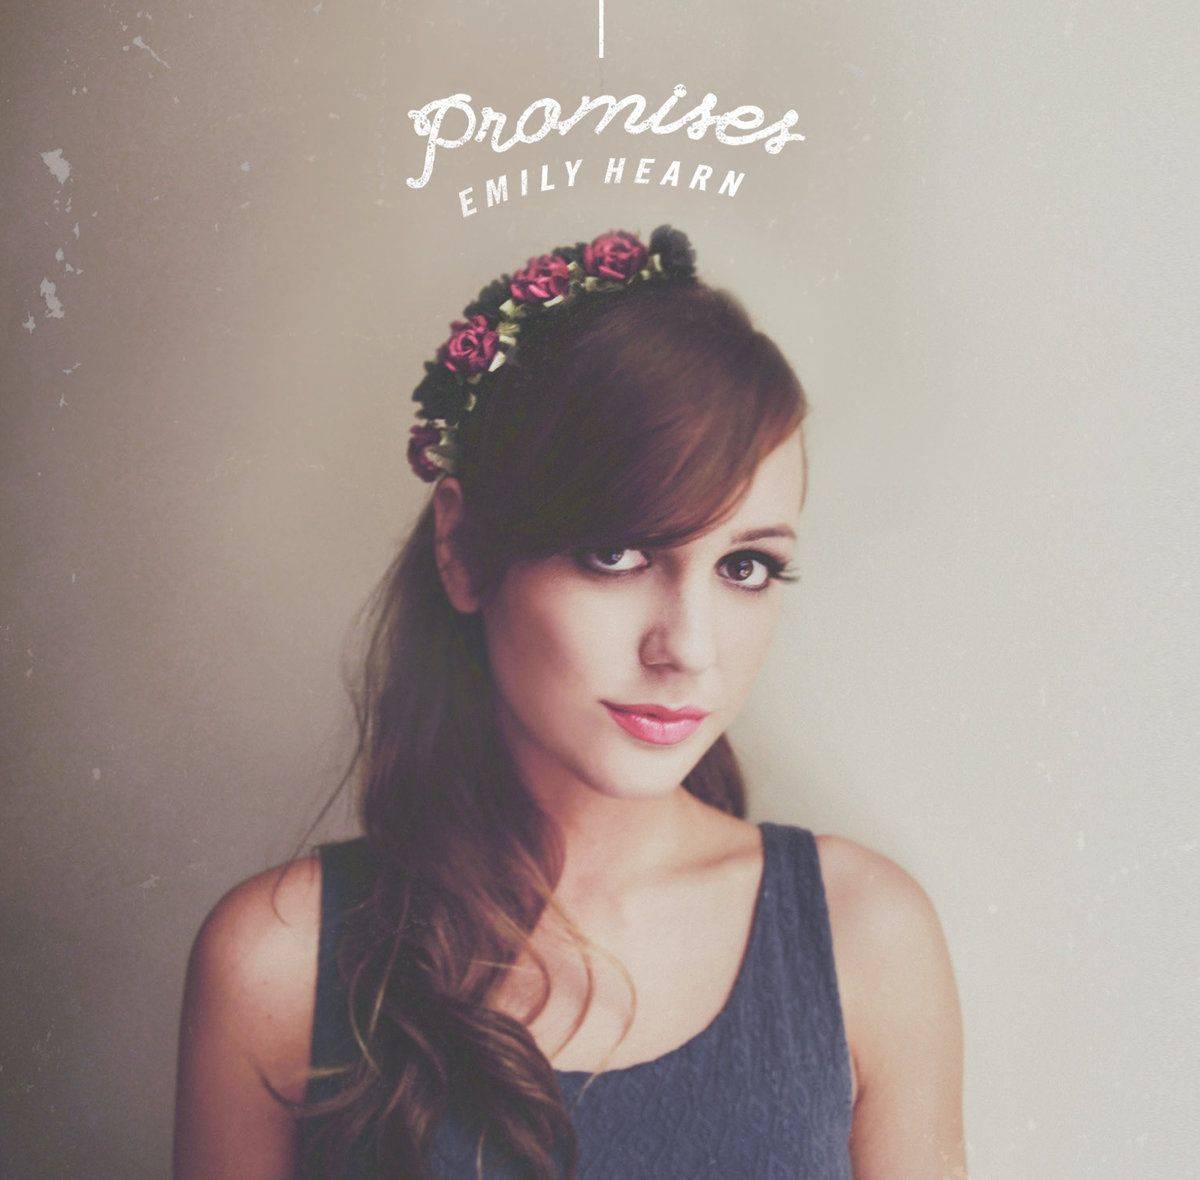 Promises (EP)